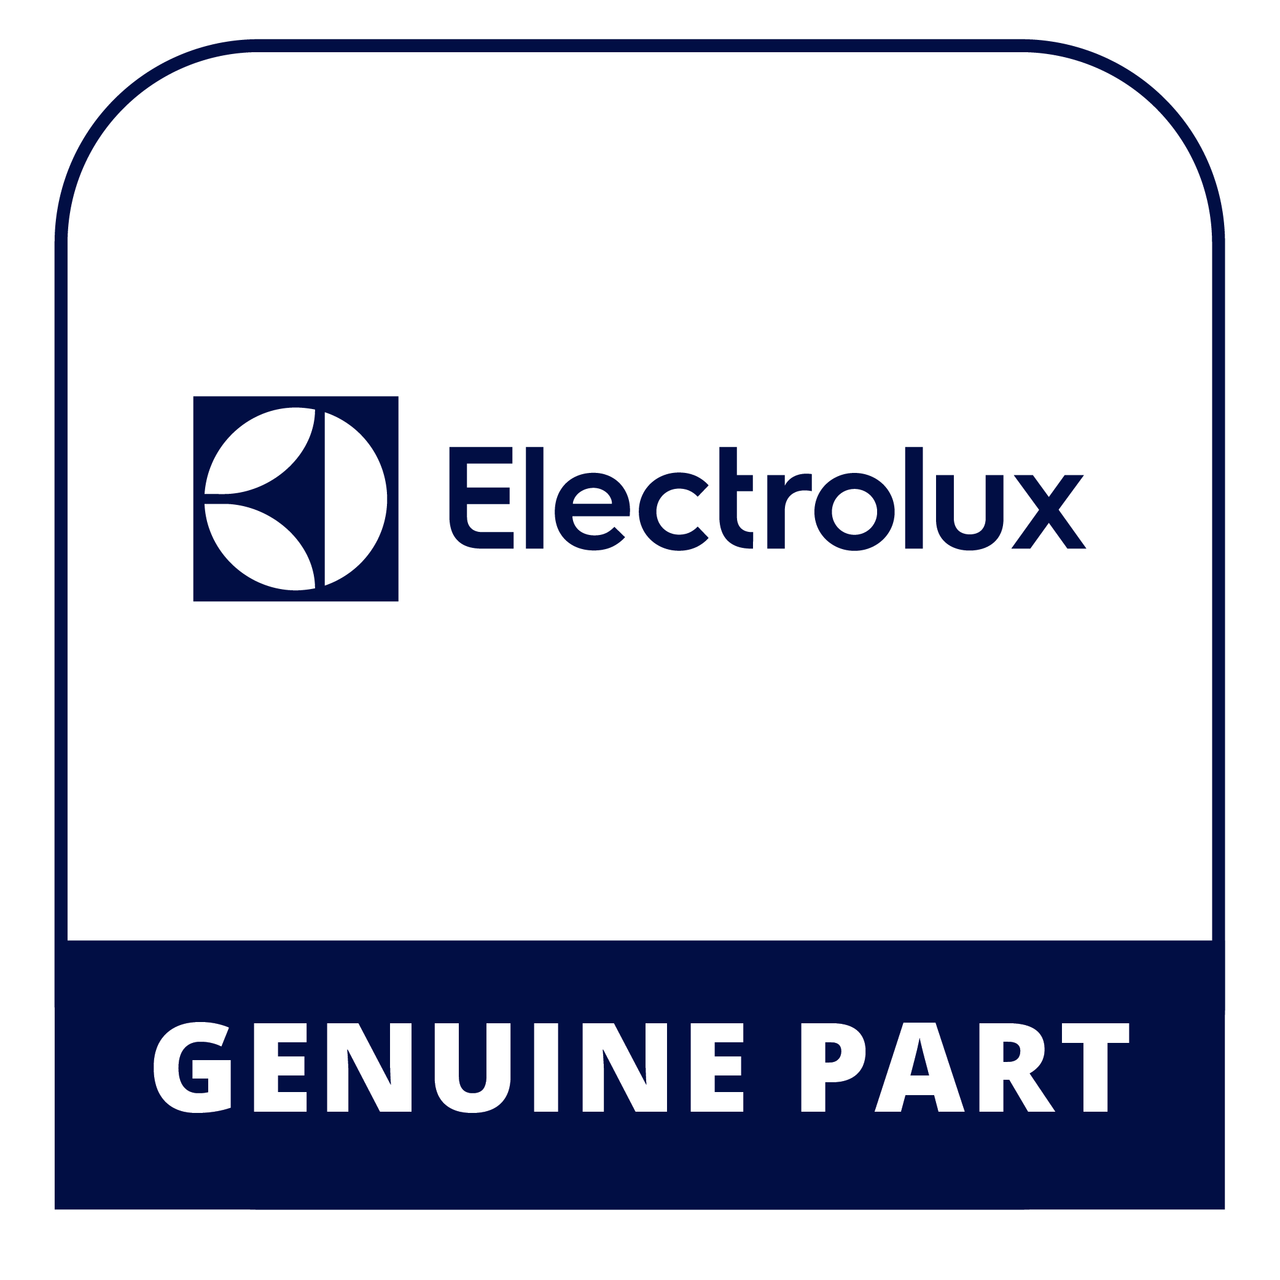 Frigidaire - Electrolux 5303161231 Slinger - Genuine Electrolux Part